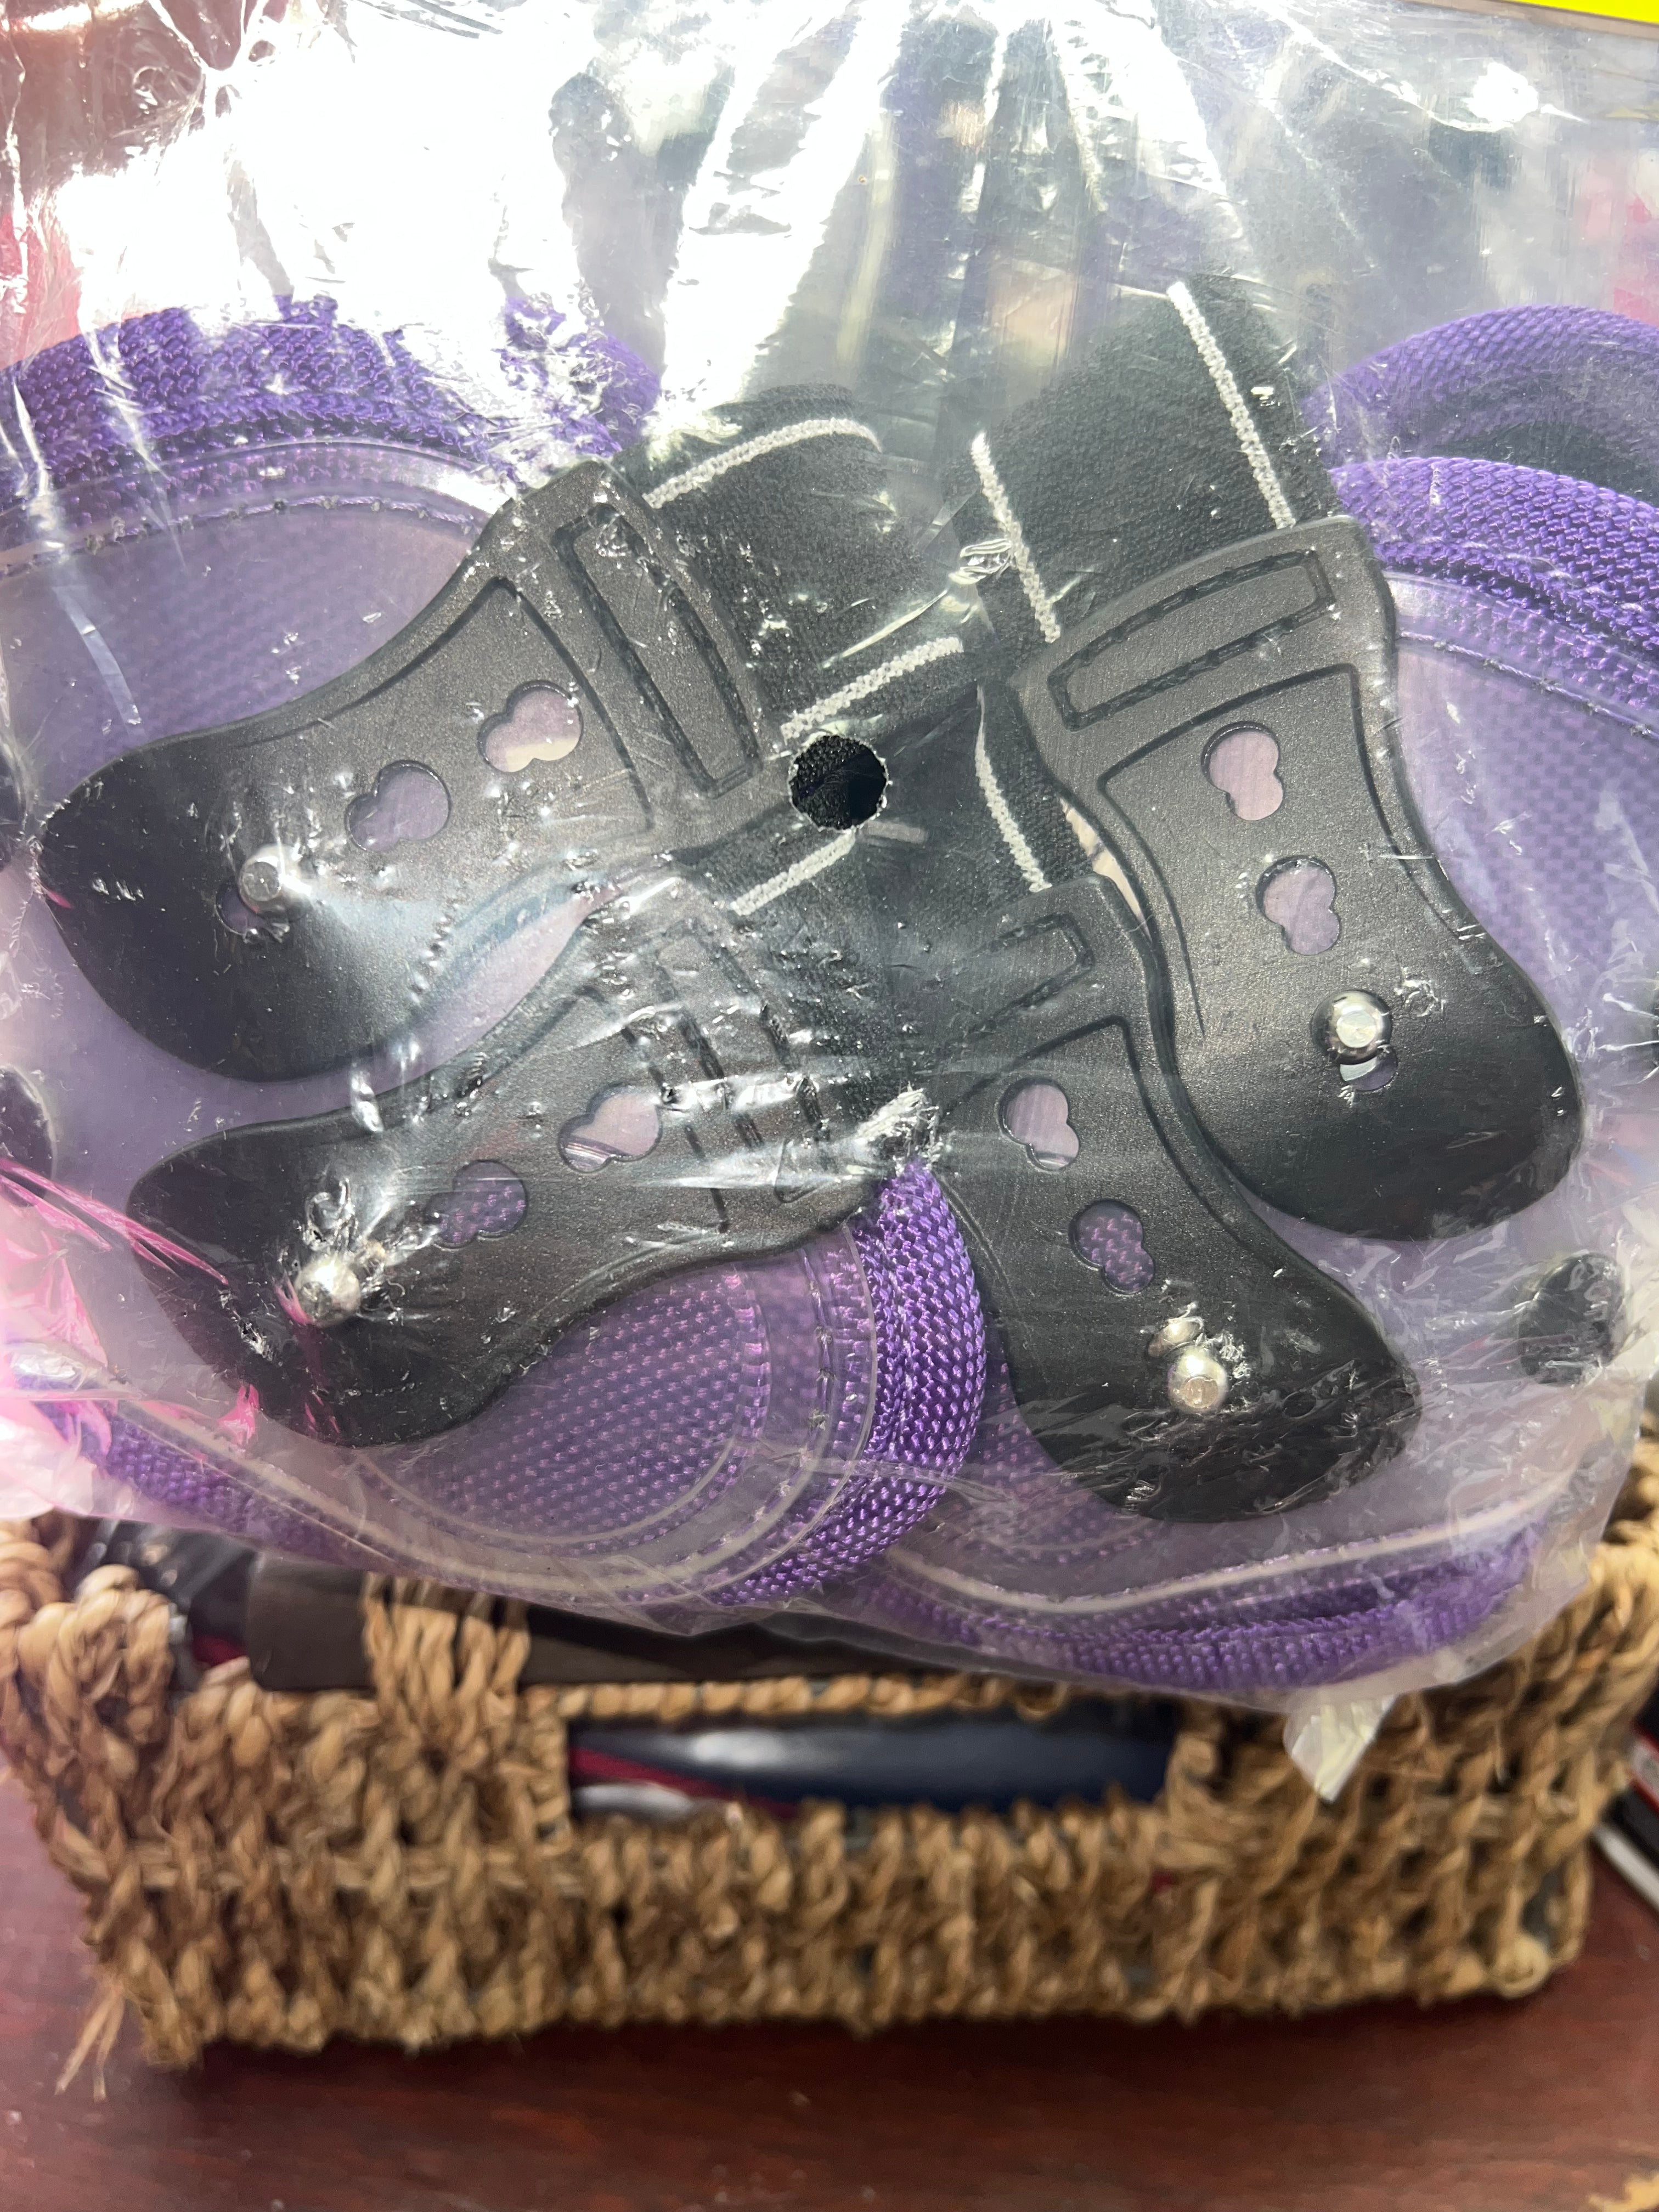 Sheldon Purple Tendon Boot set